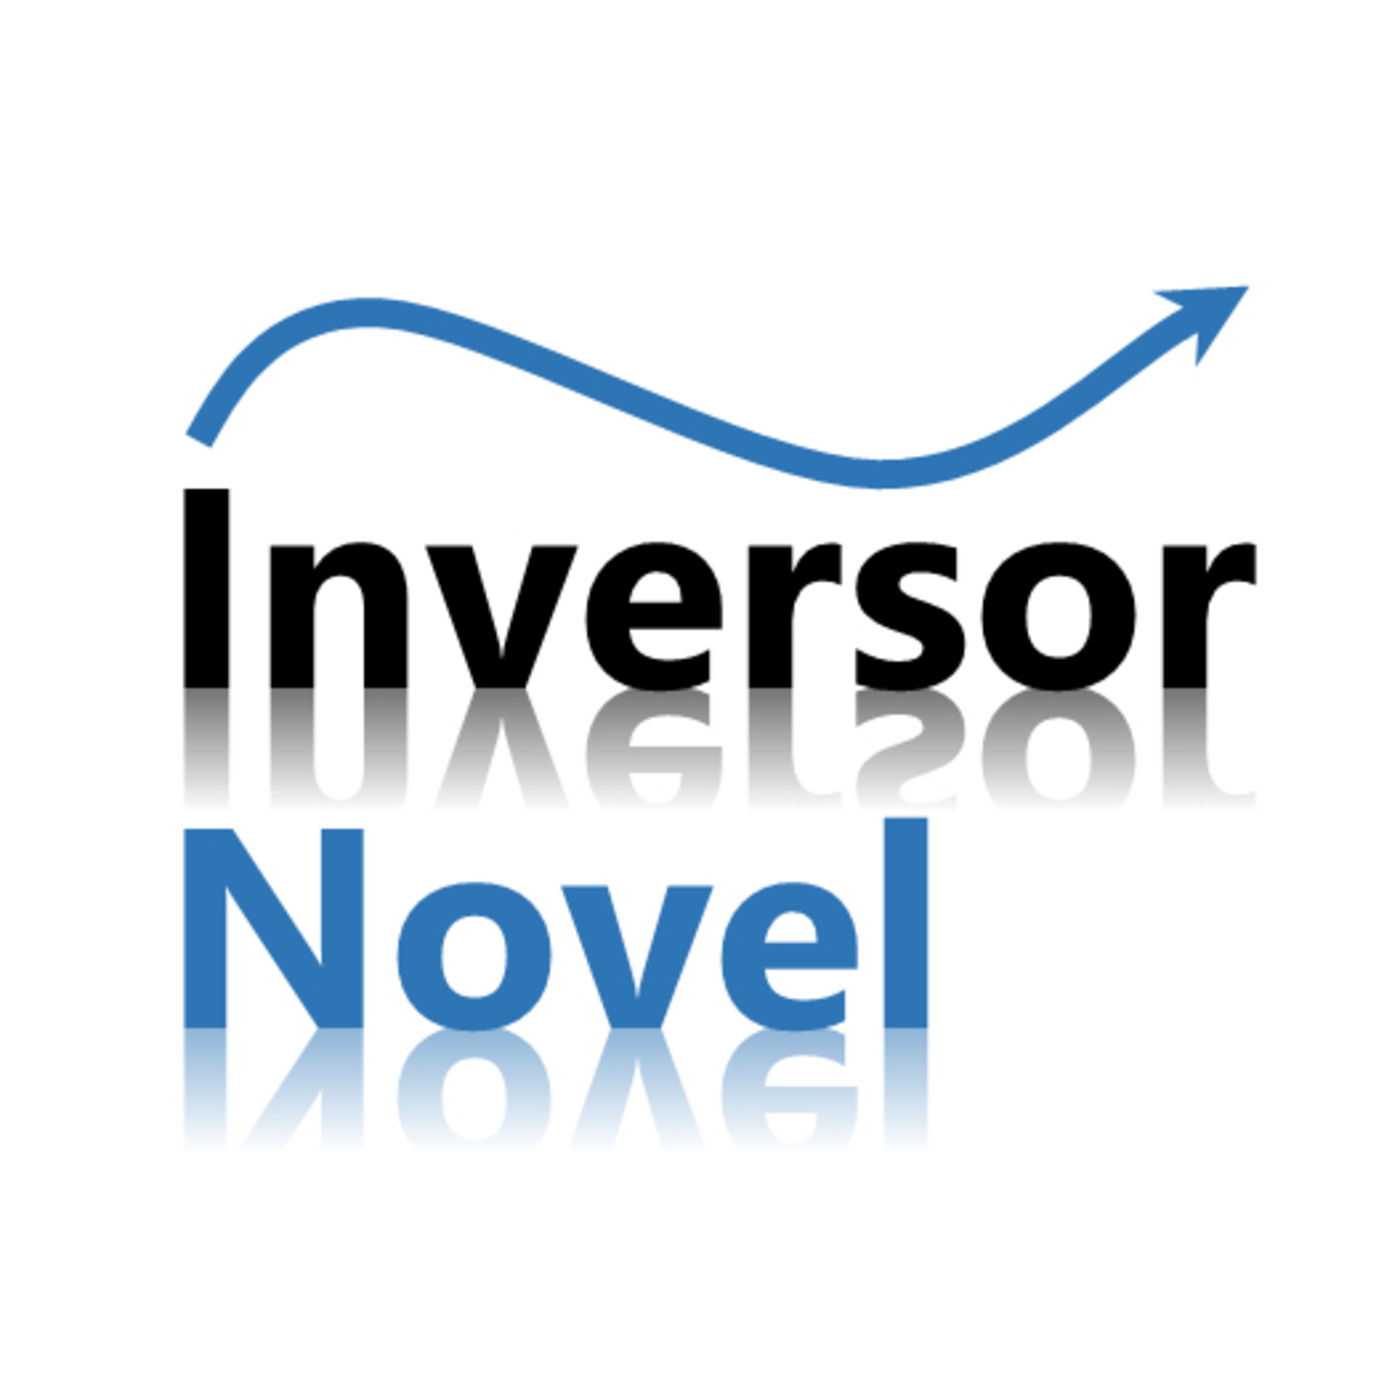 Inversor Novel